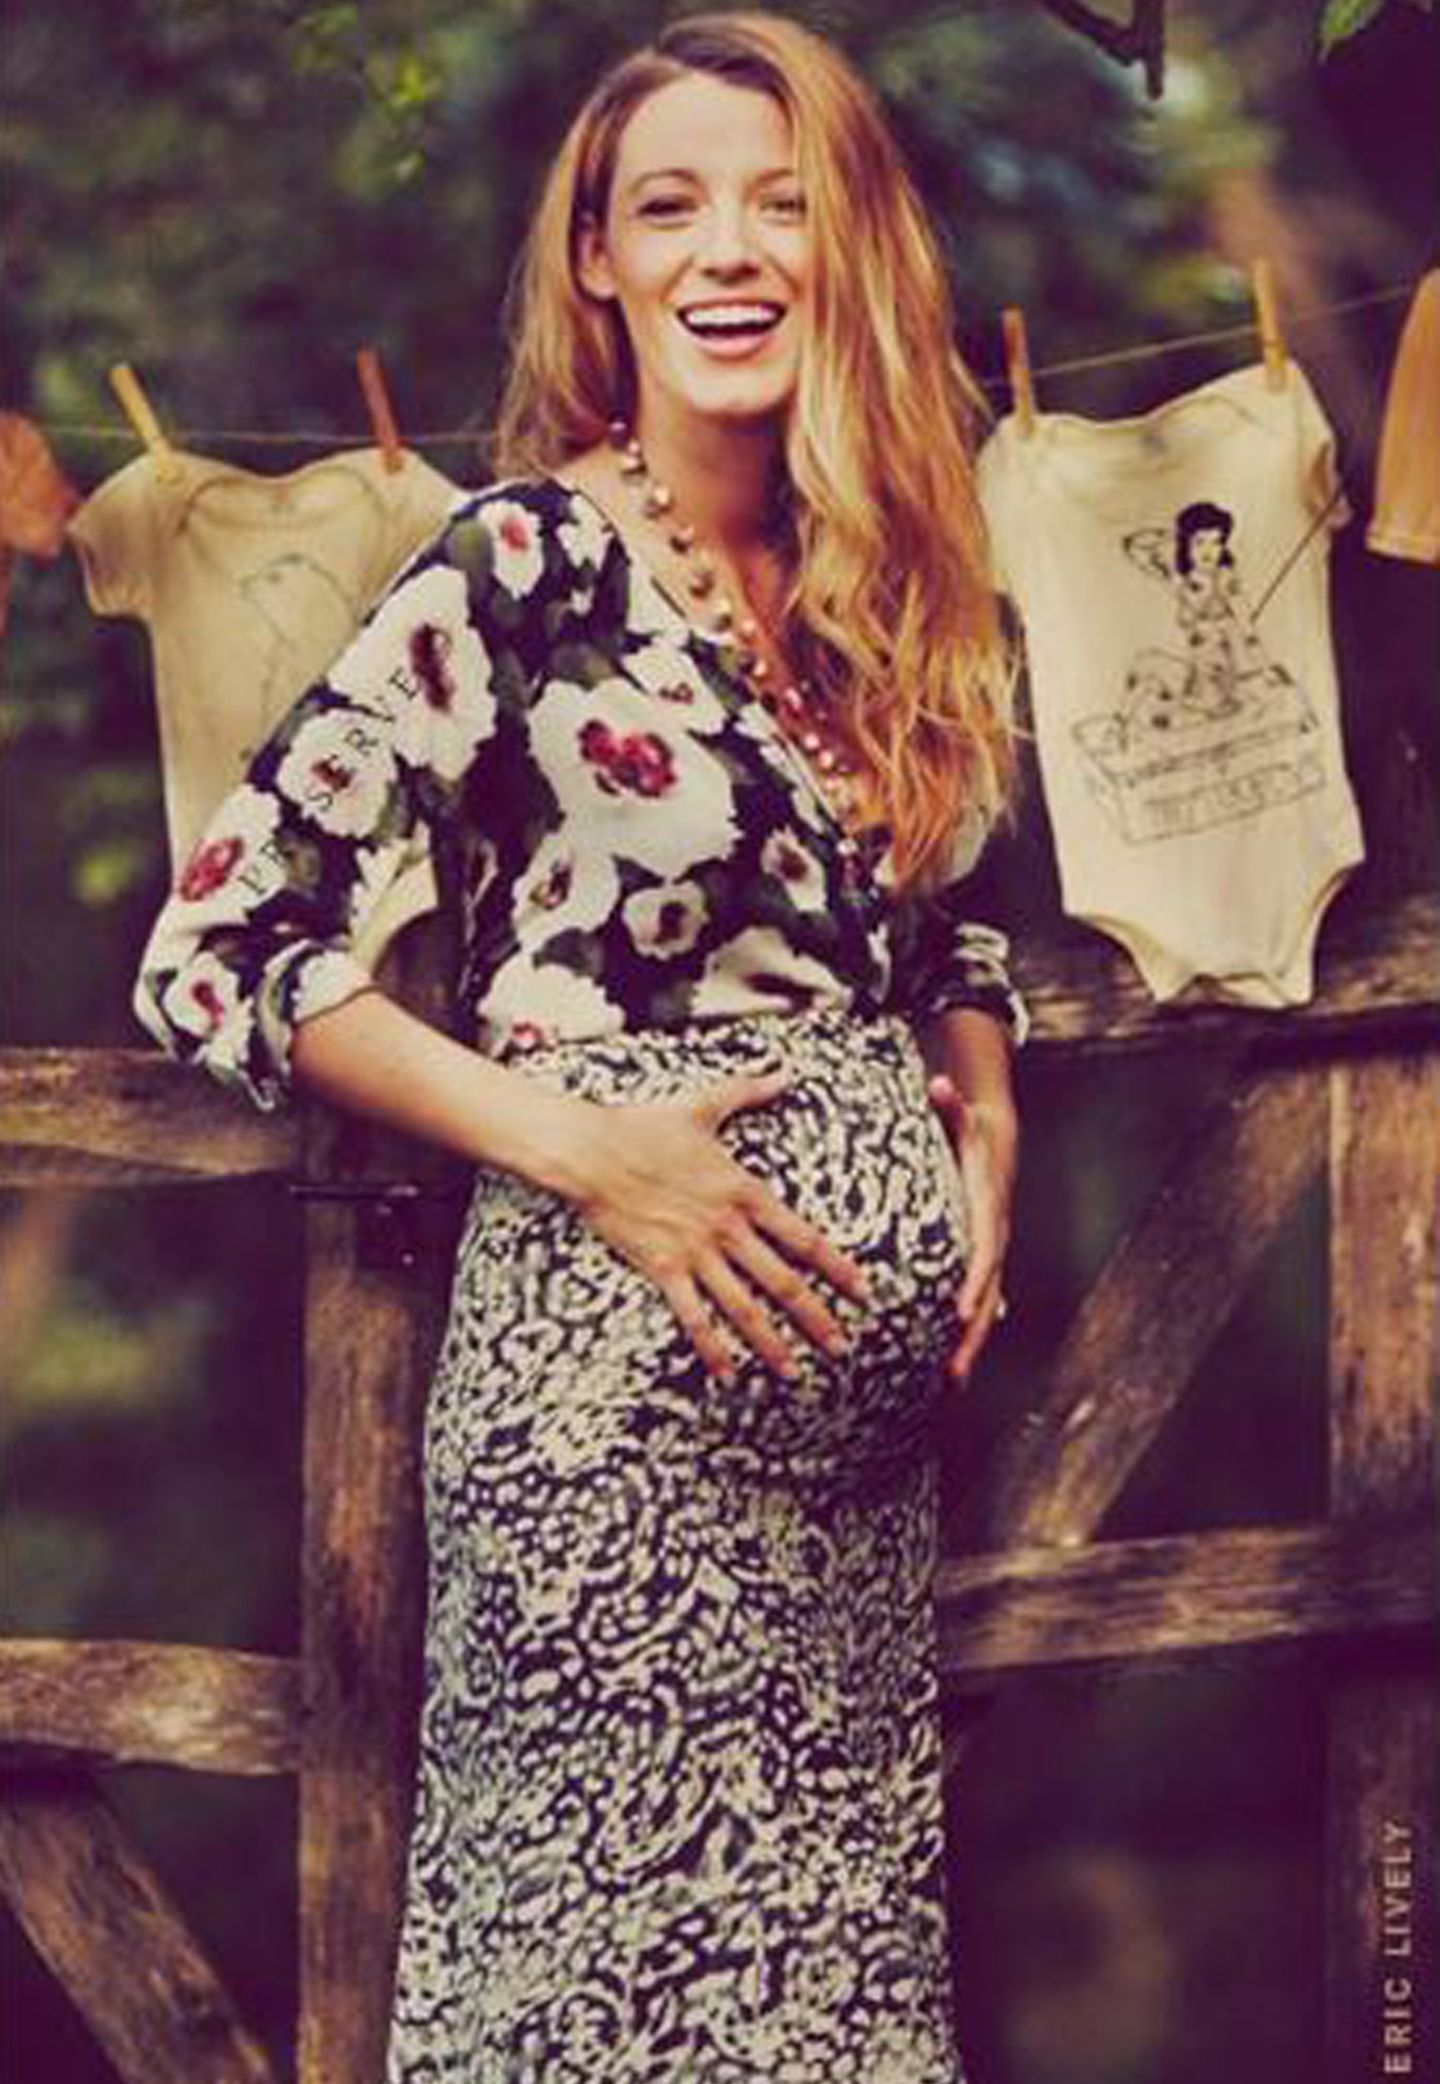 Ein glückliches Händchen für hübsche Umstands-Looks beweist Blake Lively bereits zu Beginn ihrer Schwangerschaft und kombiniert stilsicher unterschiedliche Muster zueinander.